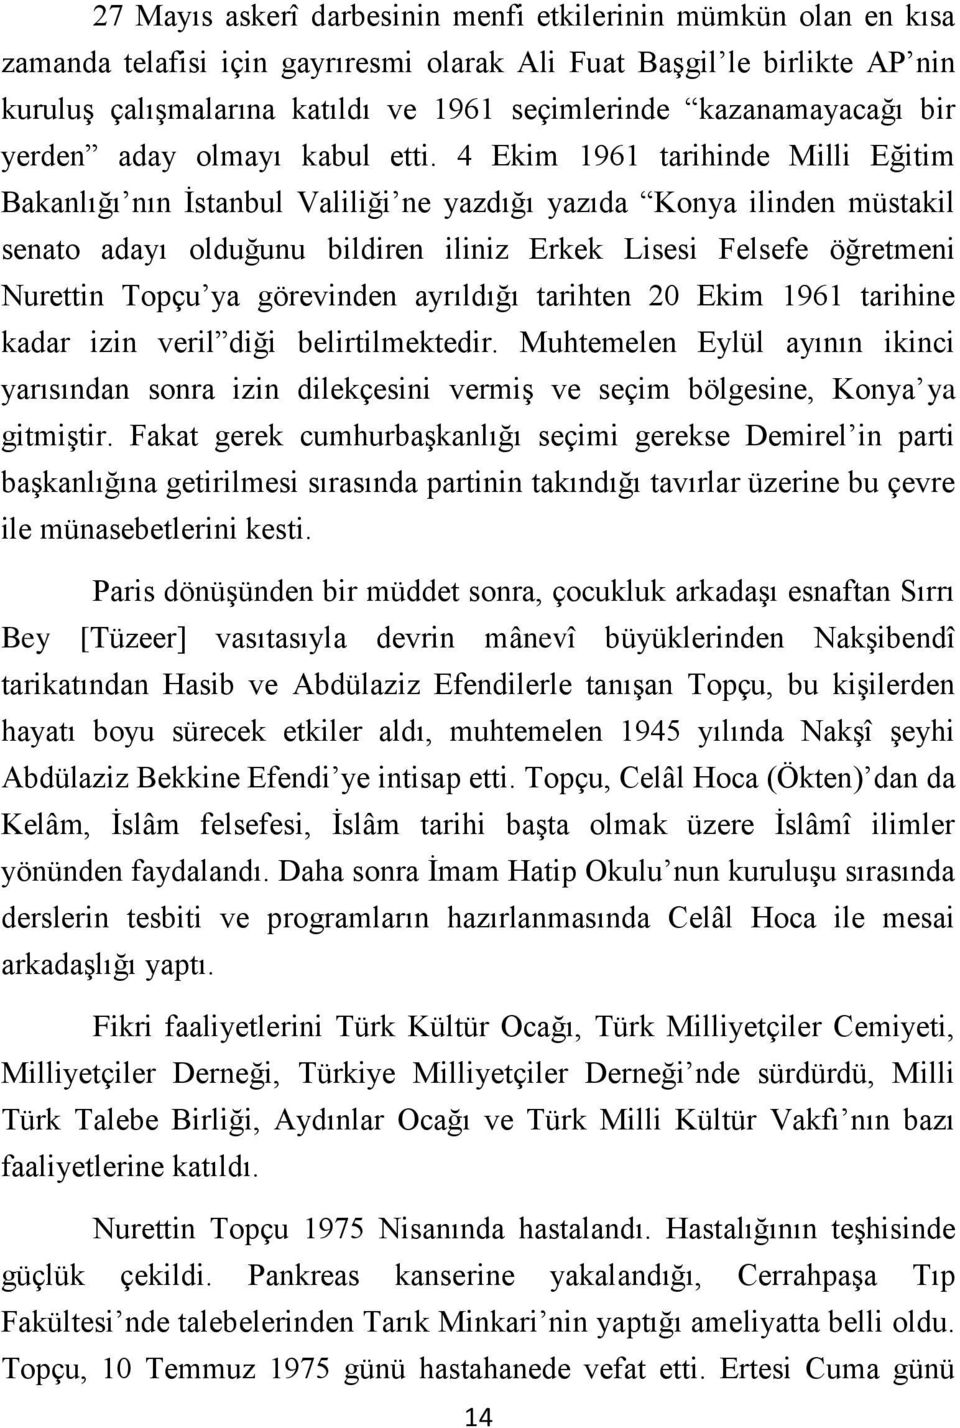 4 Ekim 1961 tarihinde Milli Eğitim Bakanlığı nın İstanbul Valiliği ne yazdığı yazıda Konya ilinden müstakil senato adayı olduğunu bildiren iliniz Erkek Lisesi Felsefe öğretmeni Nurettin Topçu ya